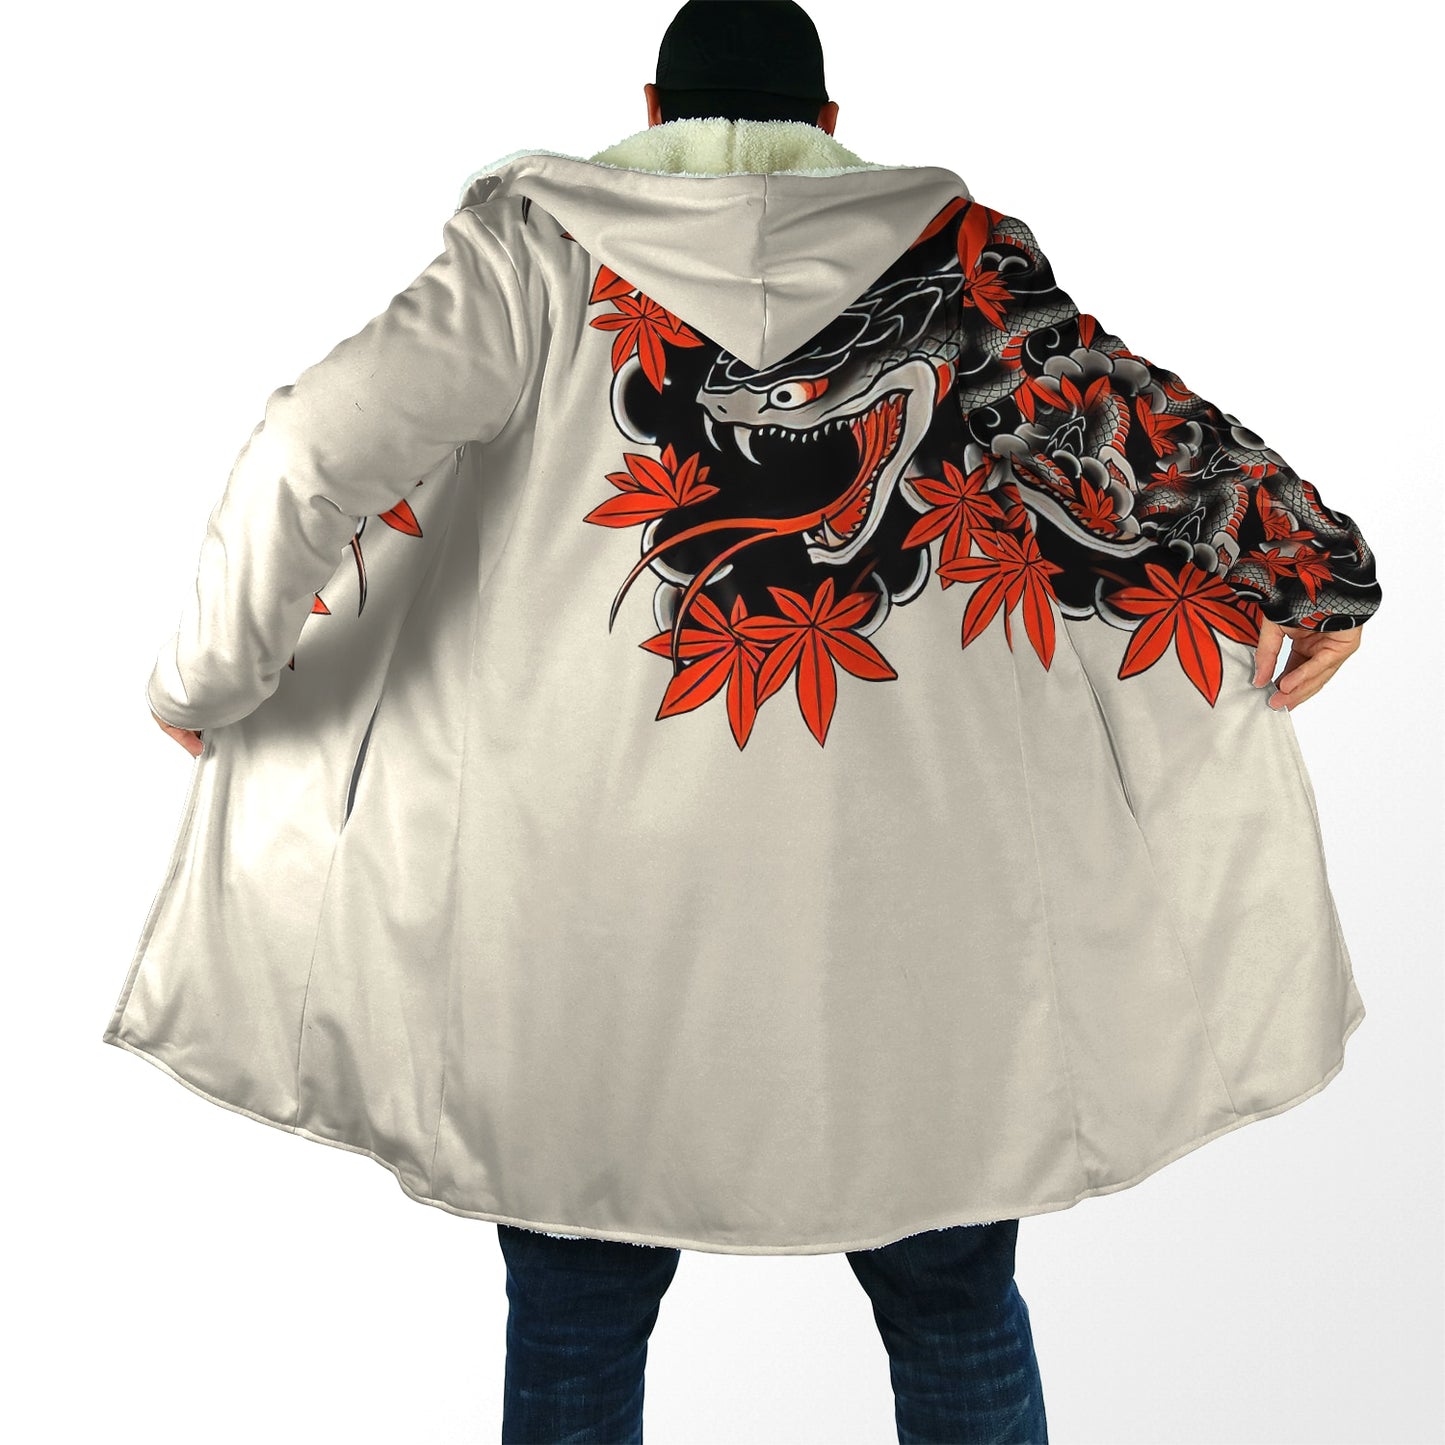 Irezumi Hooded Samurai Oni Cloak - Multiple Designs